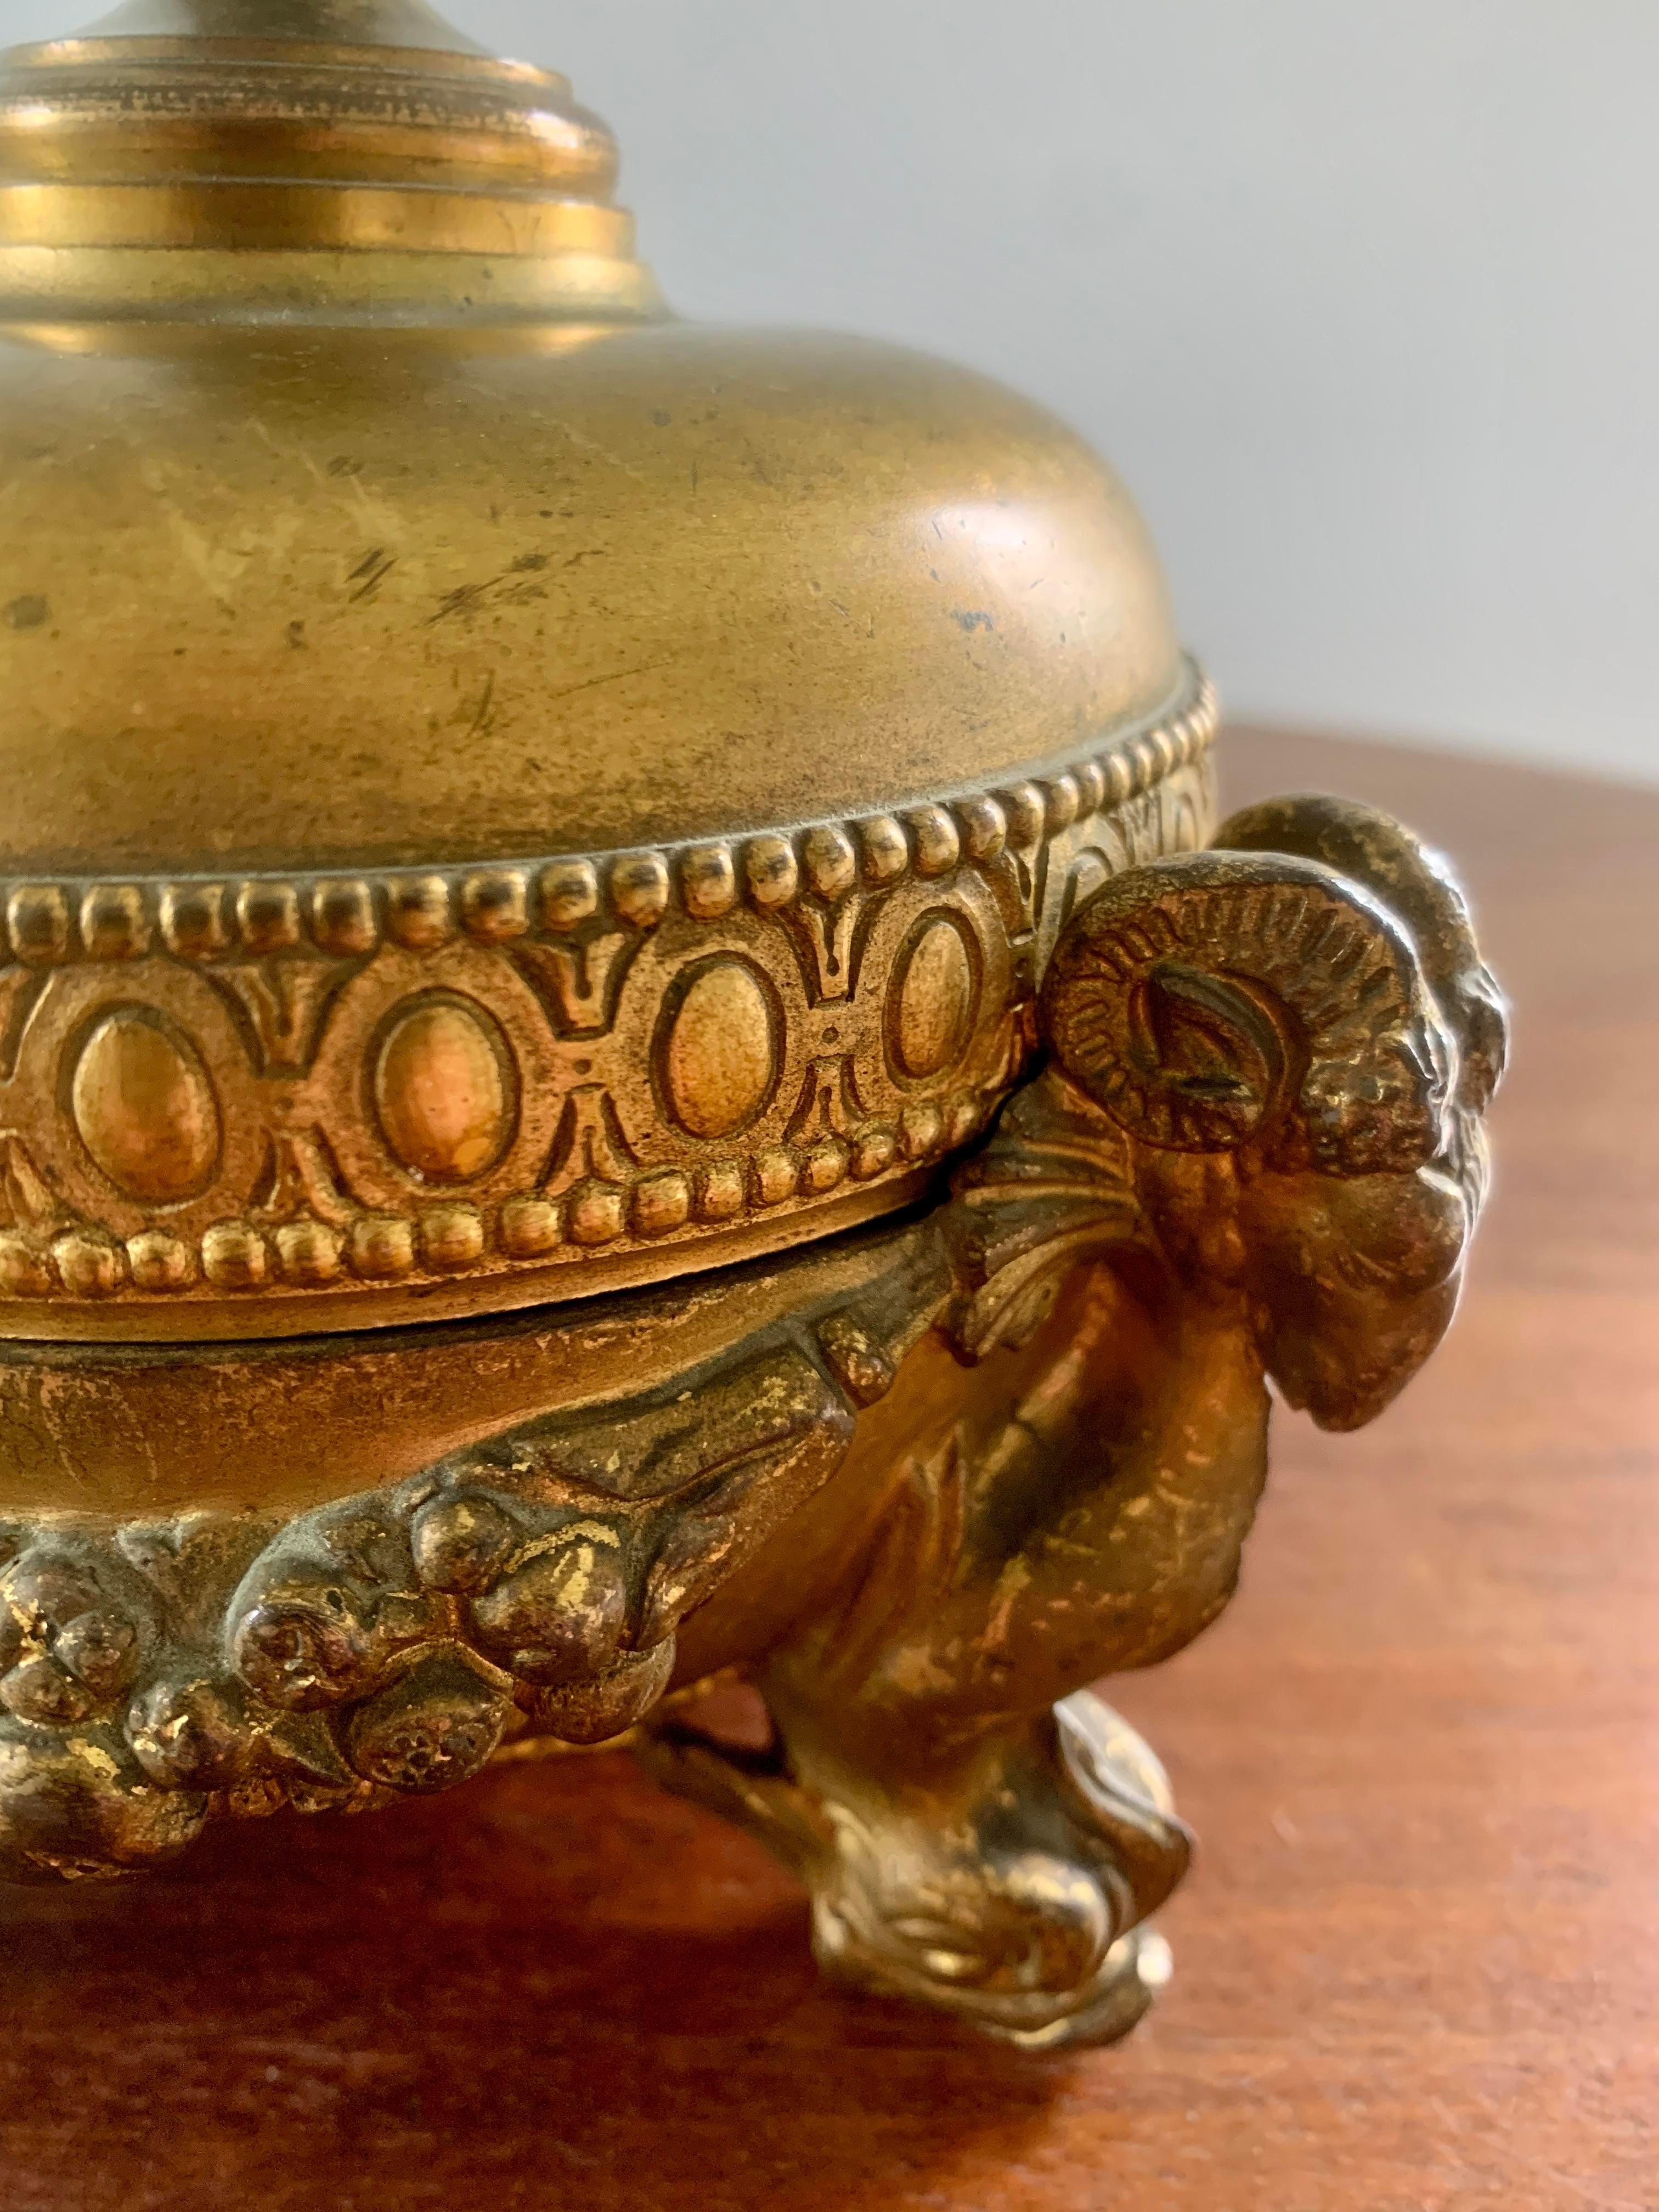 Eine prächtige vergoldete Metallschüssel mit Deckel im neoklassischen Grand-Tour-Stil mit Widderköpfen und Delphinfüßen

CIRCA frühes 20. Jahrhundert

Maße: 6,25